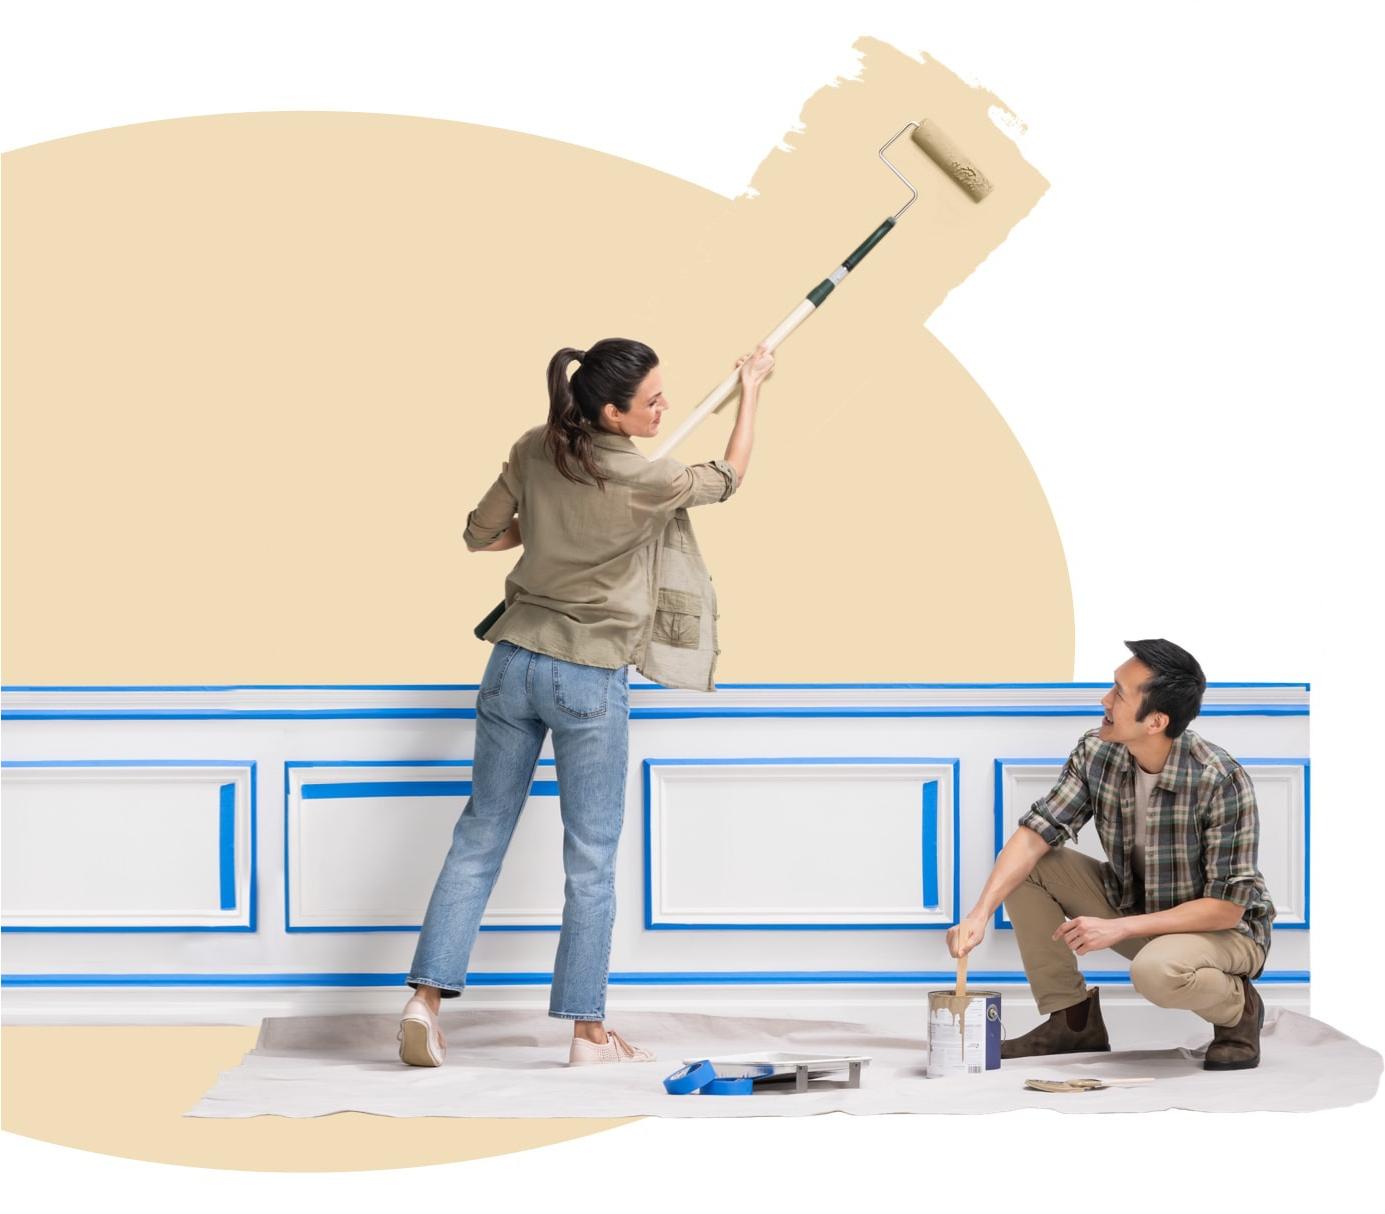 一名妇女在椭圆形的卡其色餐厅外用延伸的滚筒作画，她的丈夫则在粉刷墙面.